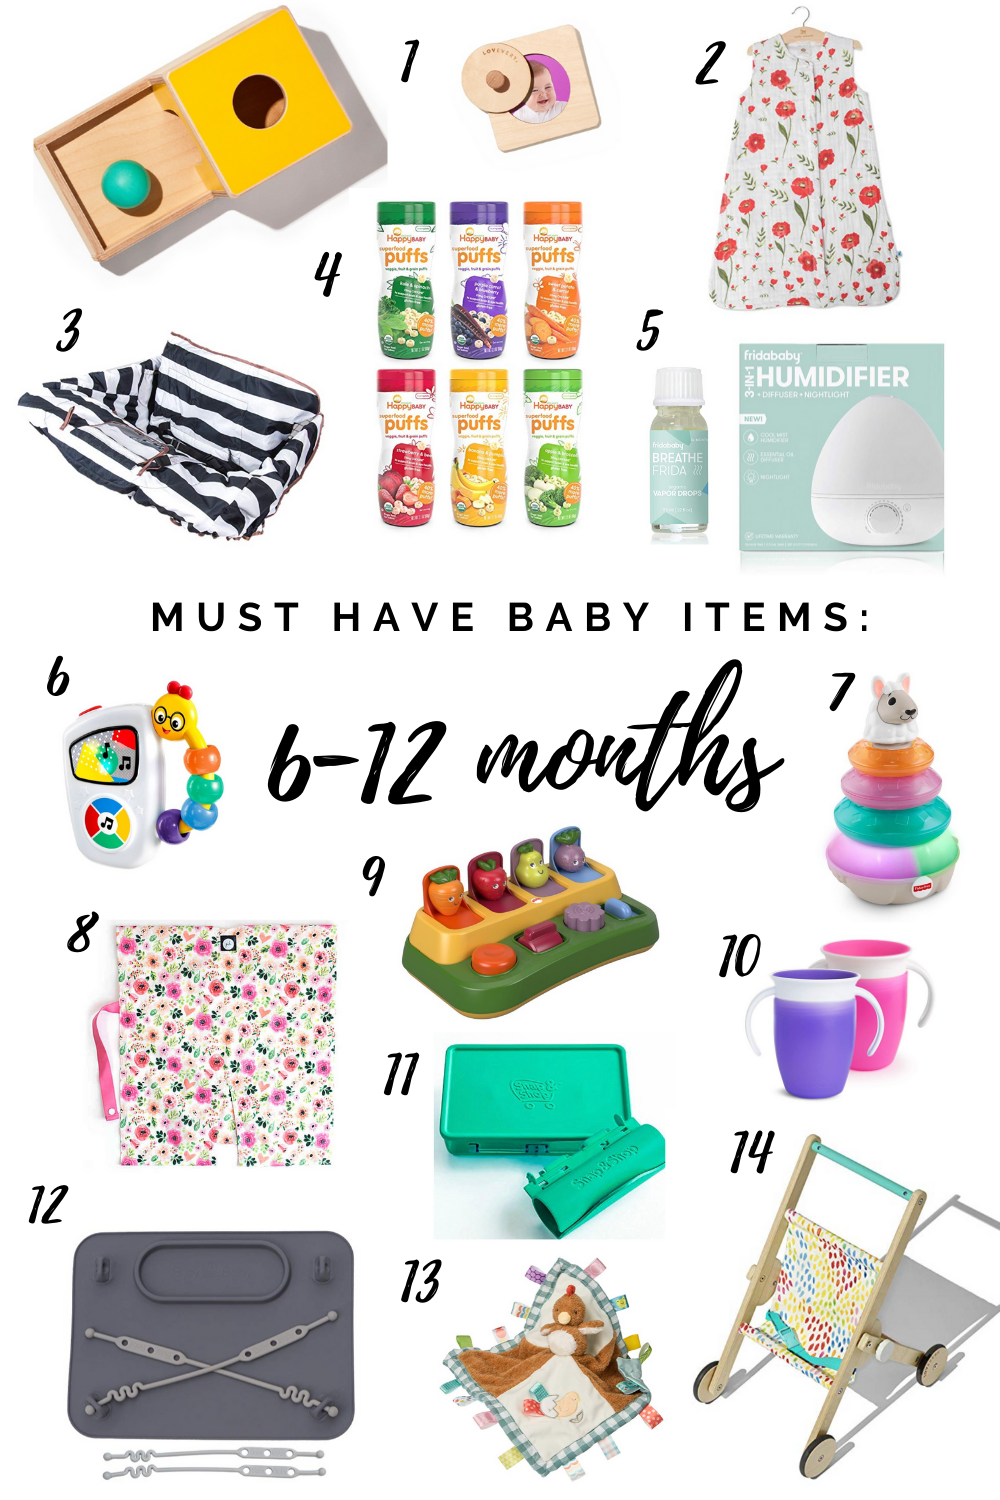 Baby Essentials: 6-12 Months